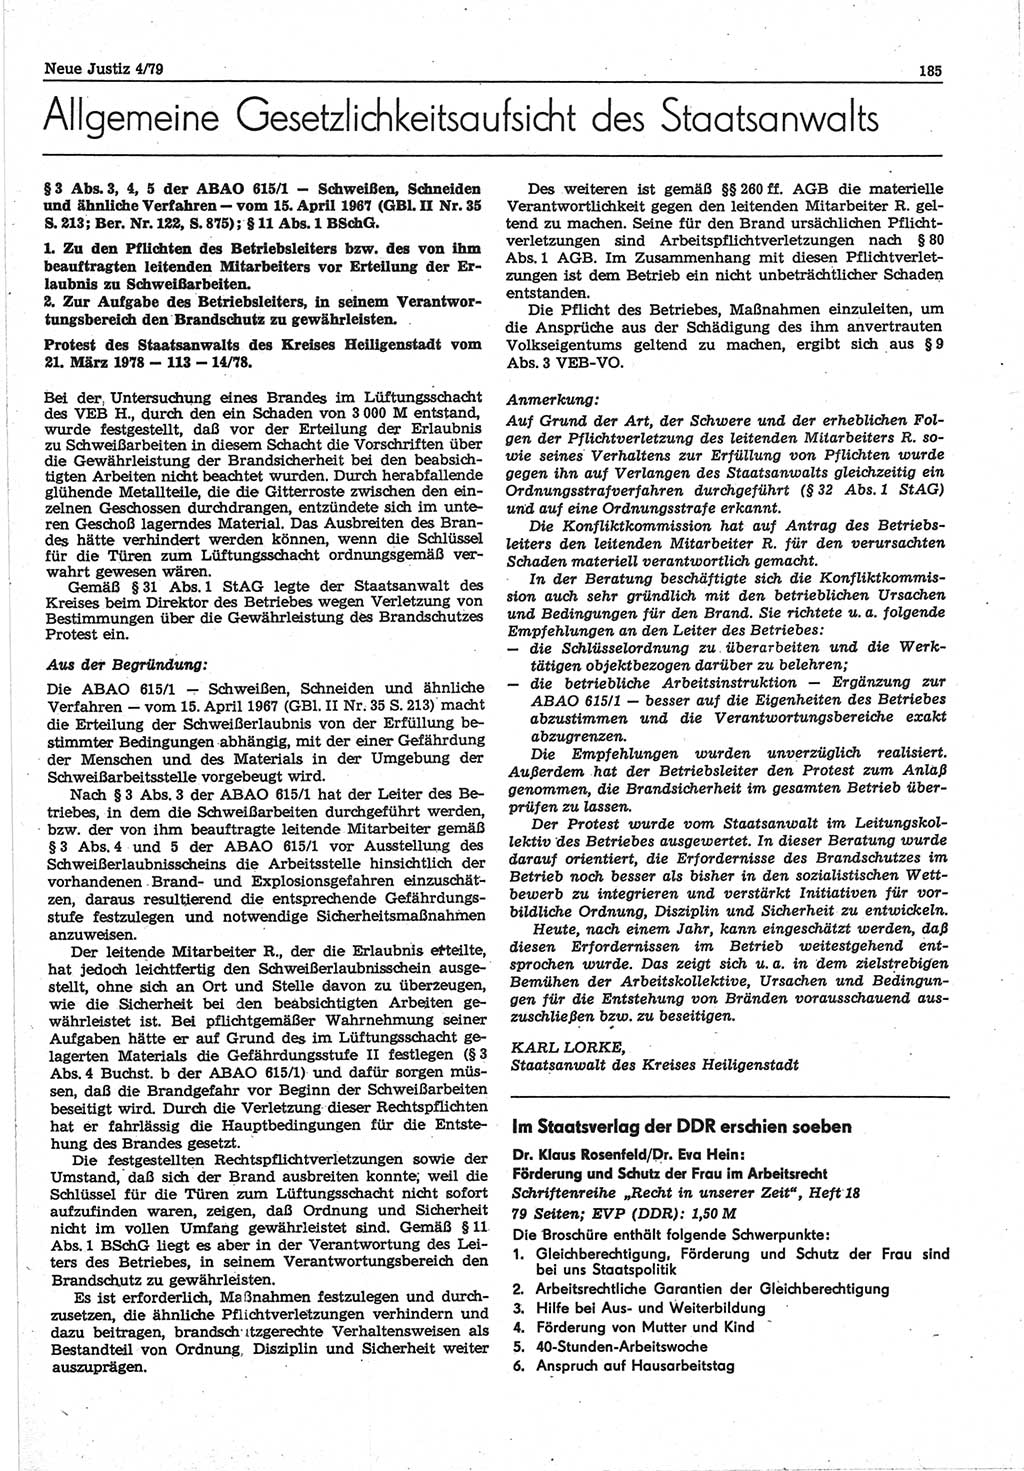 Neue Justiz (NJ), Zeitschrift für sozialistisches Recht und Gesetzlichkeit [Deutsche Demokratische Republik (DDR)], 33. Jahrgang 1979, Seite 185 (NJ DDR 1979, S. 185)